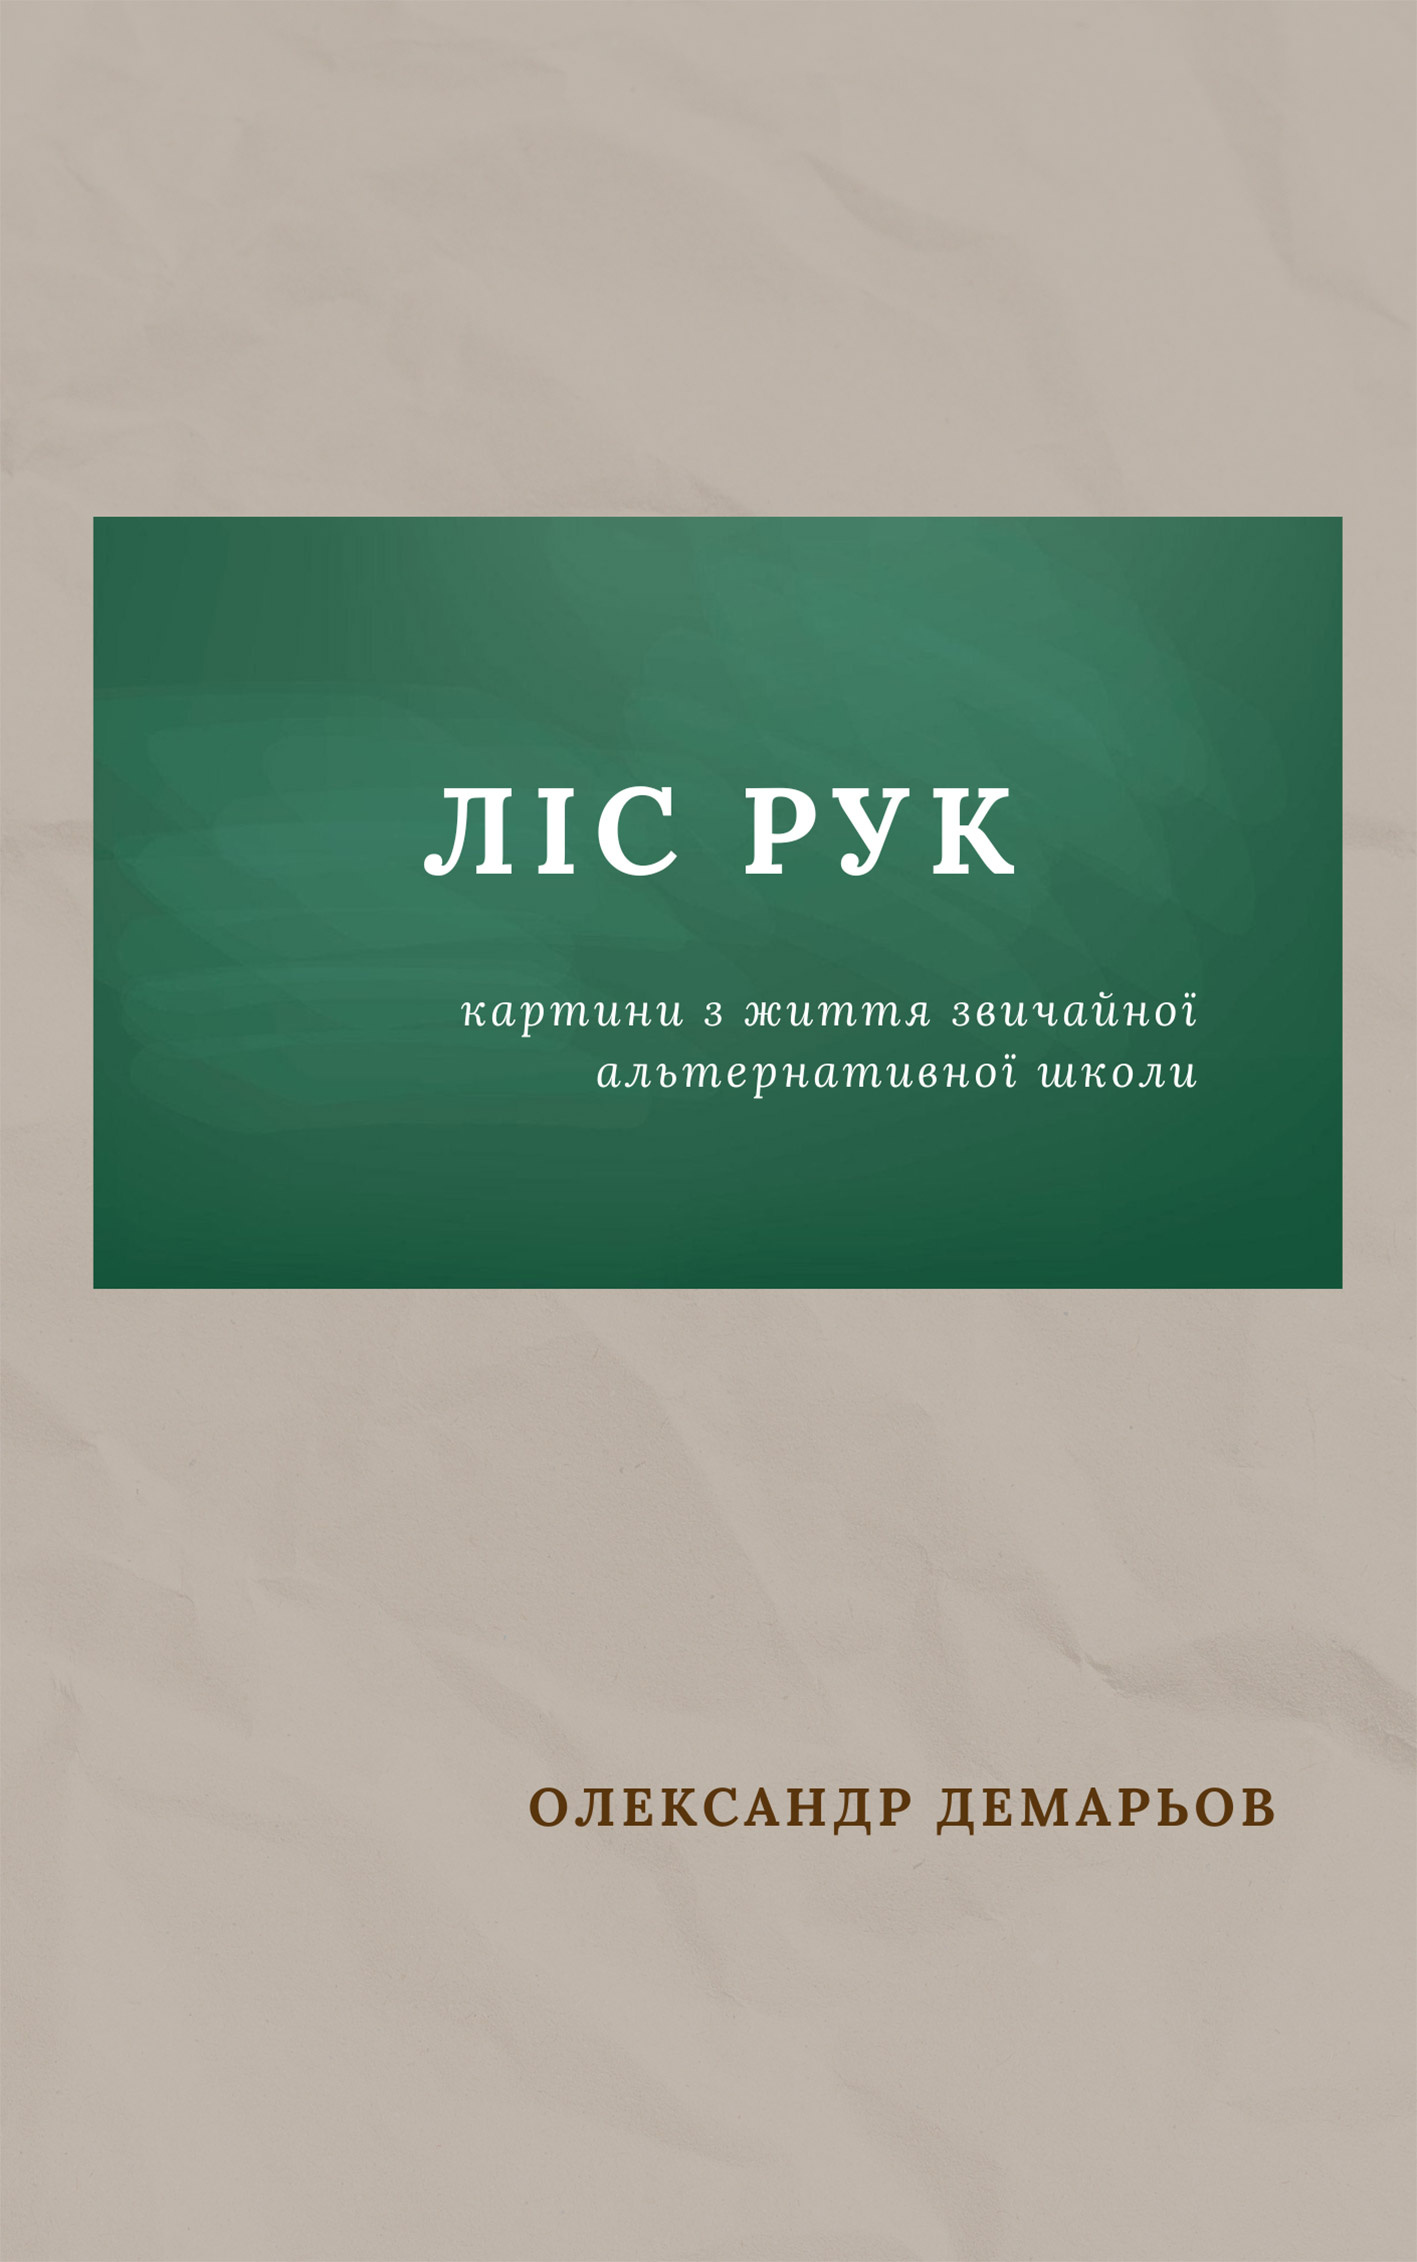 Учебная литература. Автор — Олександр Демарьов. 